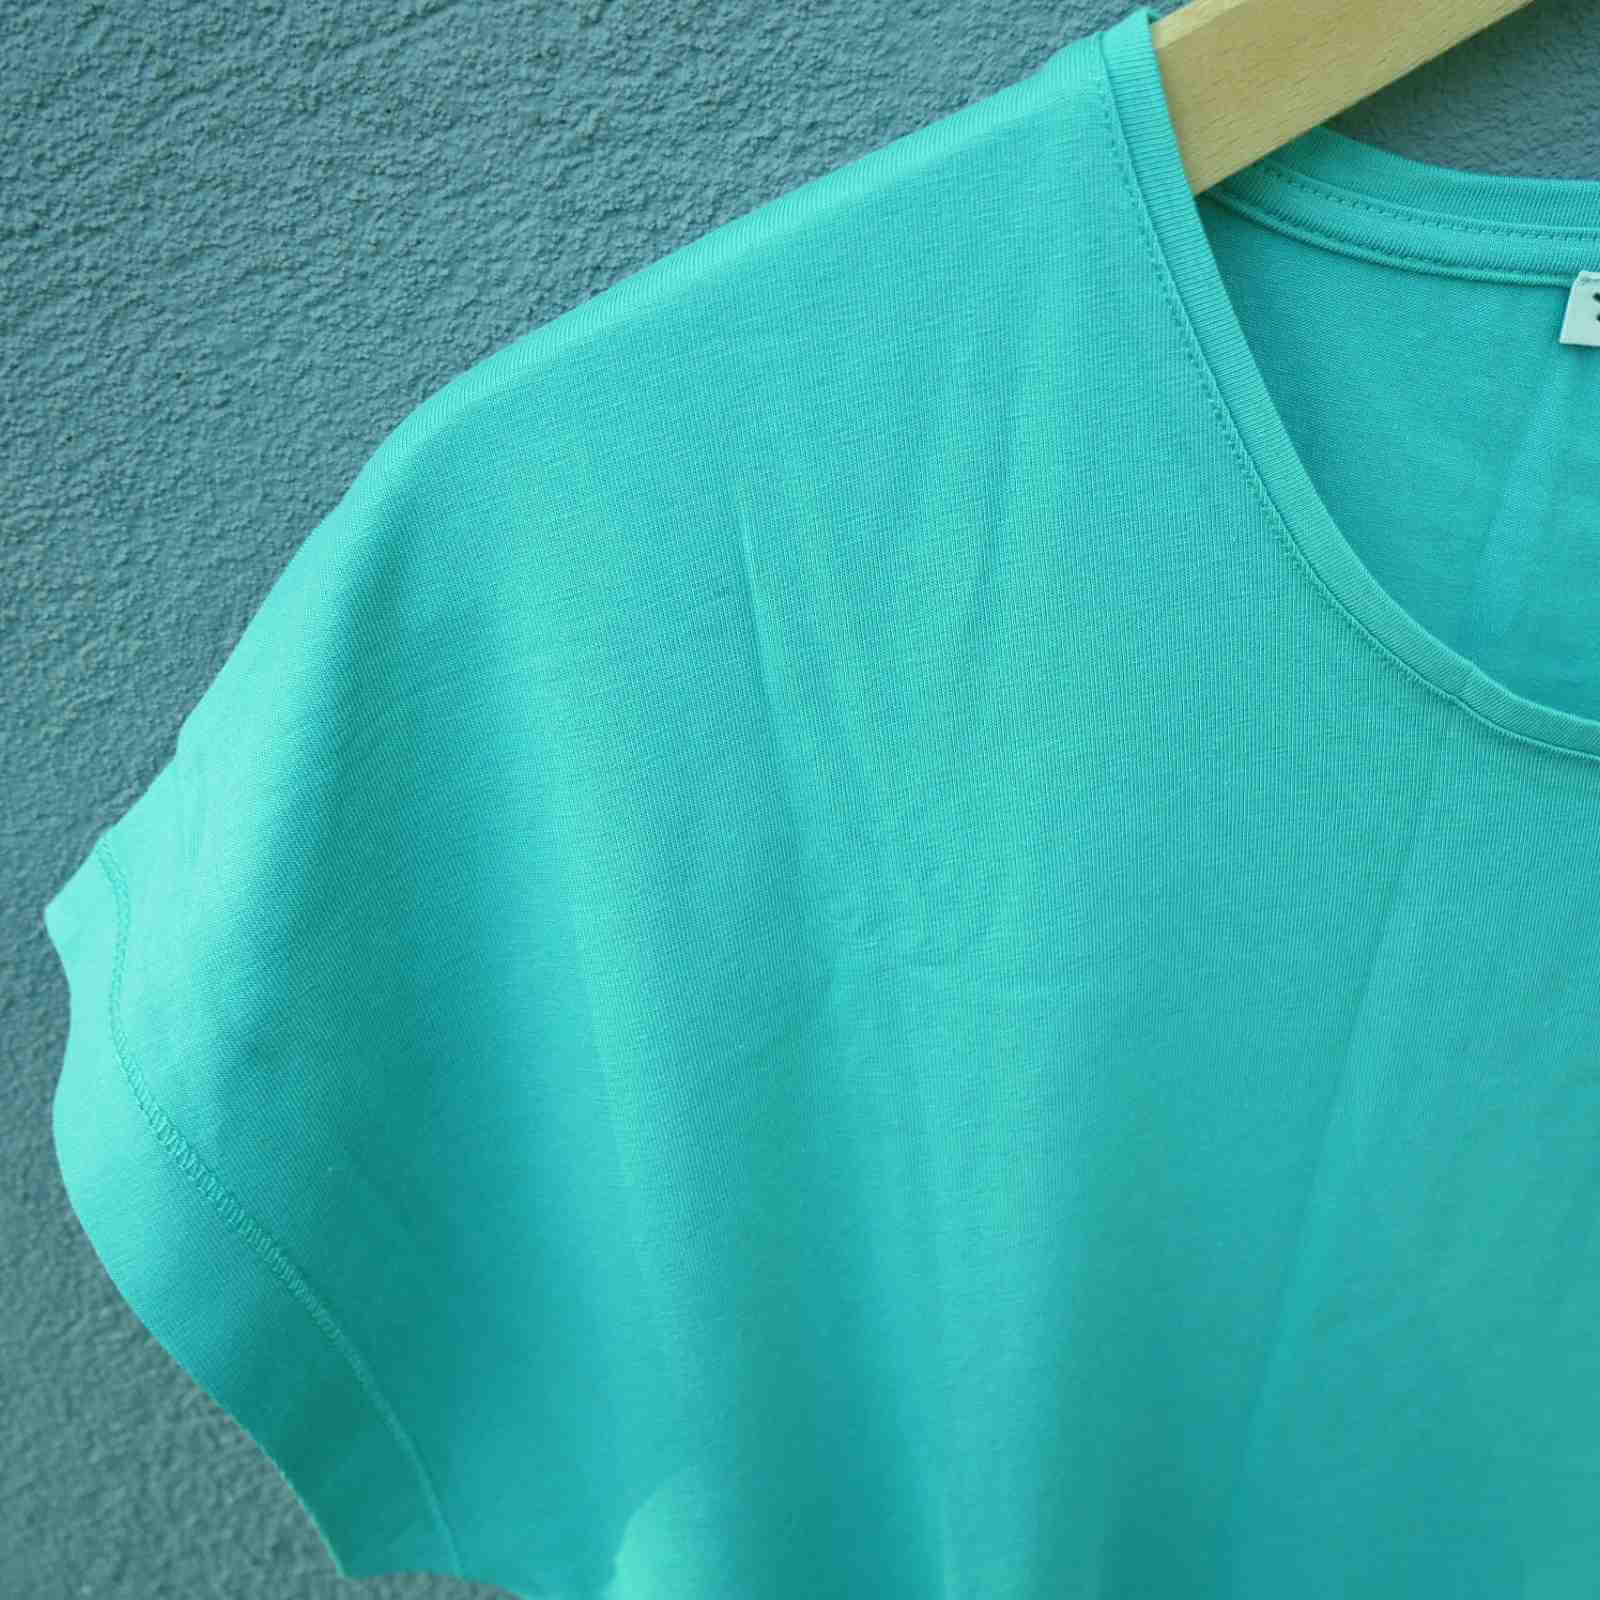 Mansted t-shirt emerald grøn ærme hals detalje